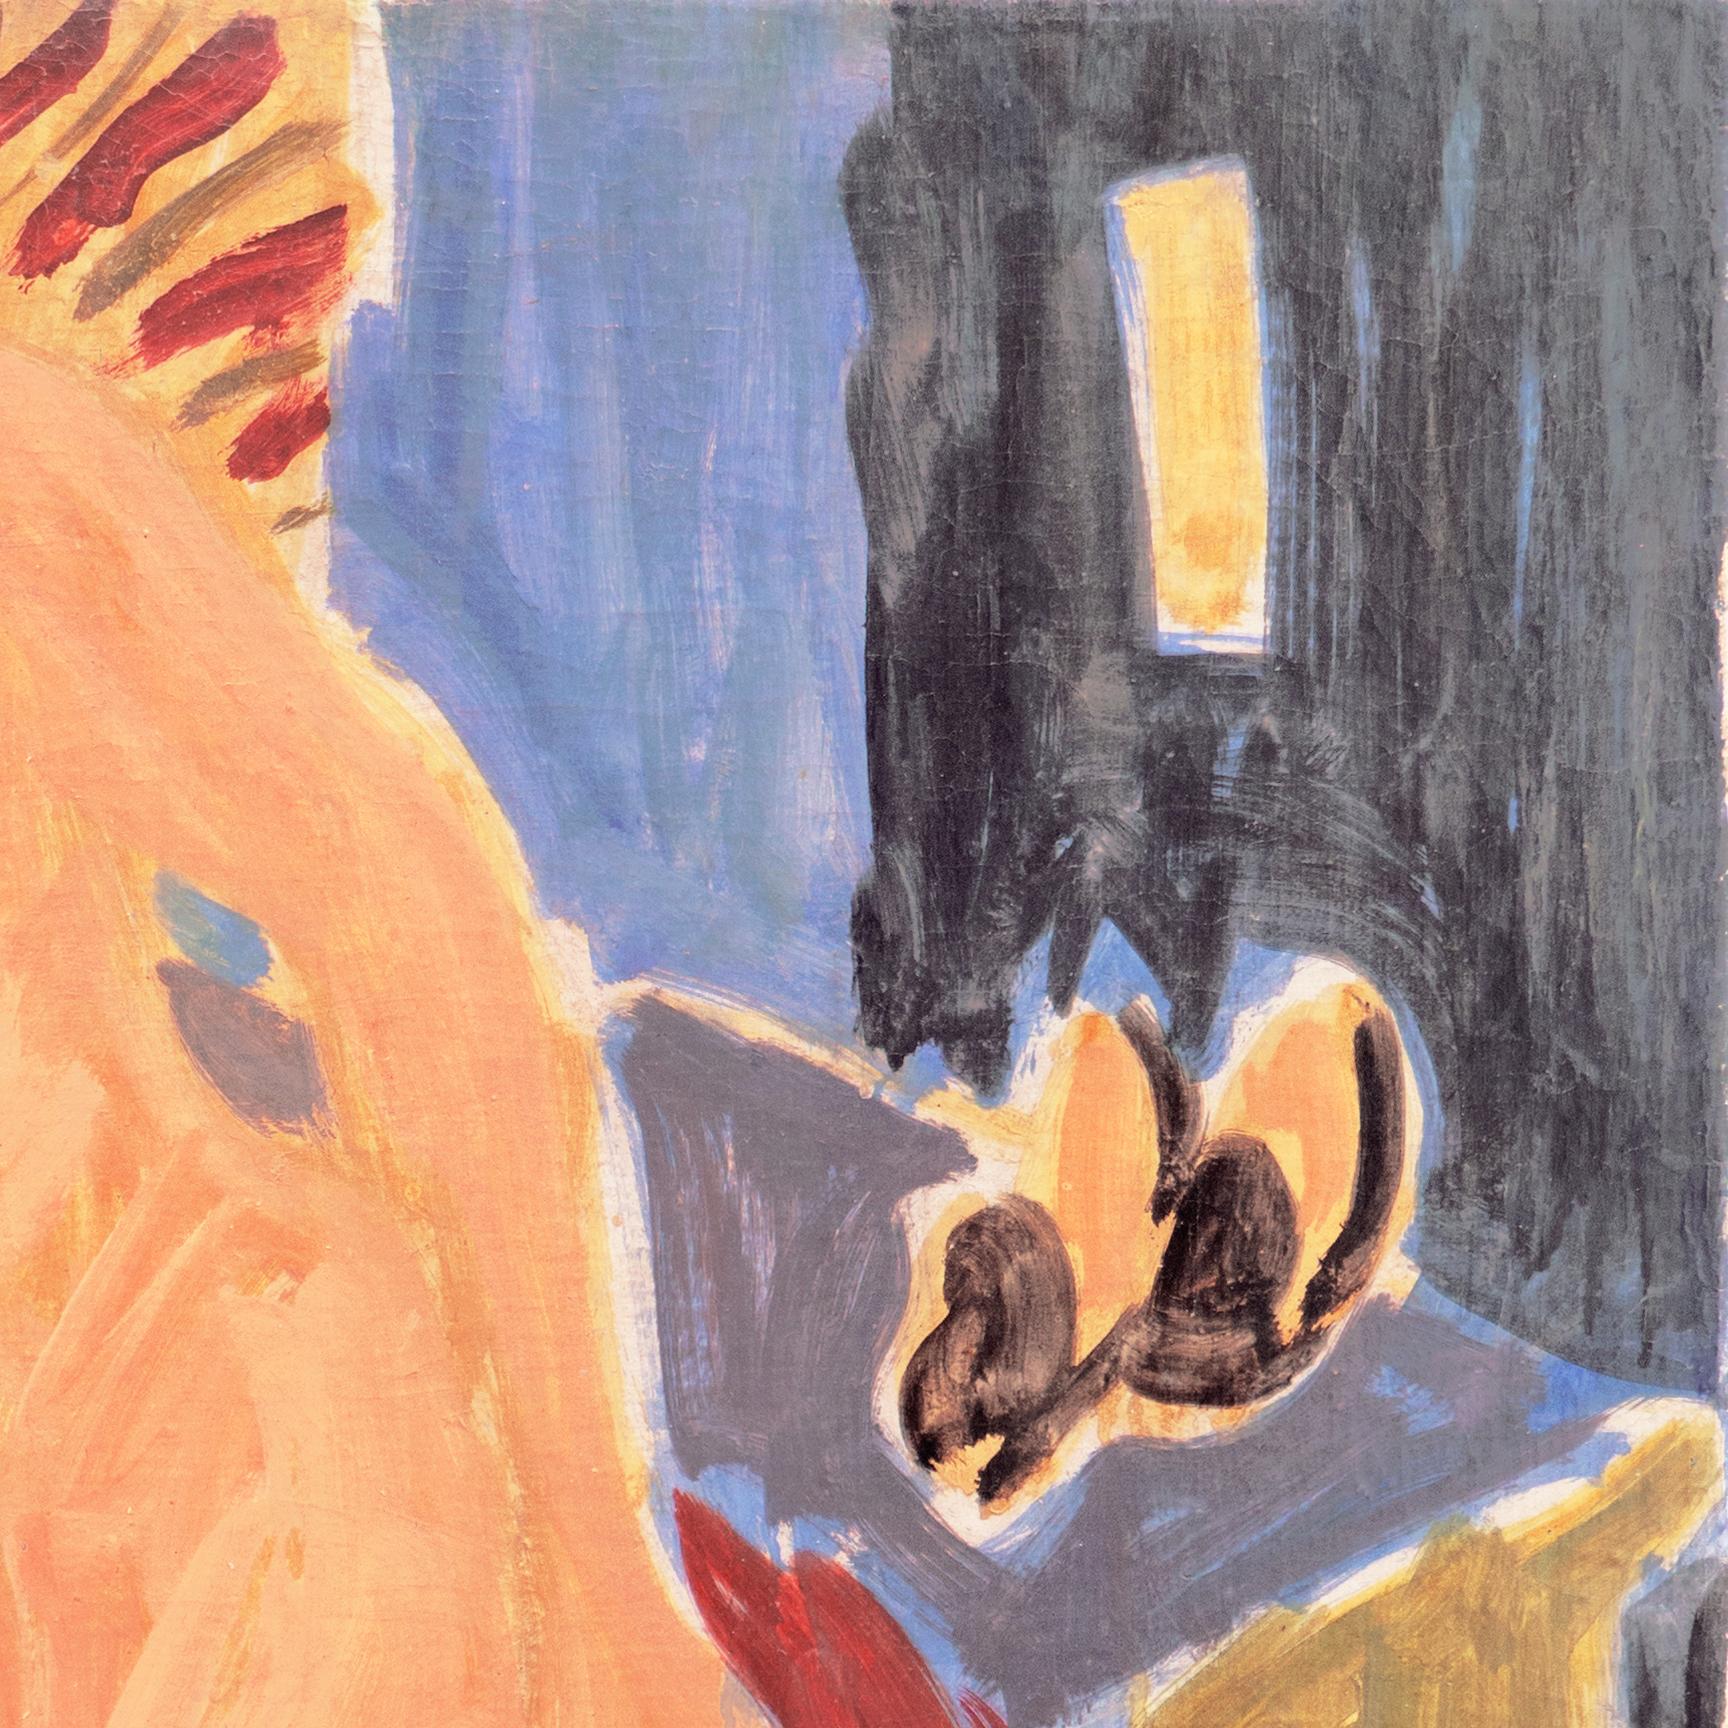 „Sitzender Akt“, Paris, Louvre, Academie Chaumiere, Carmel, Kalifornien, LACMA, Öl – Painting von Victor Di Gesu